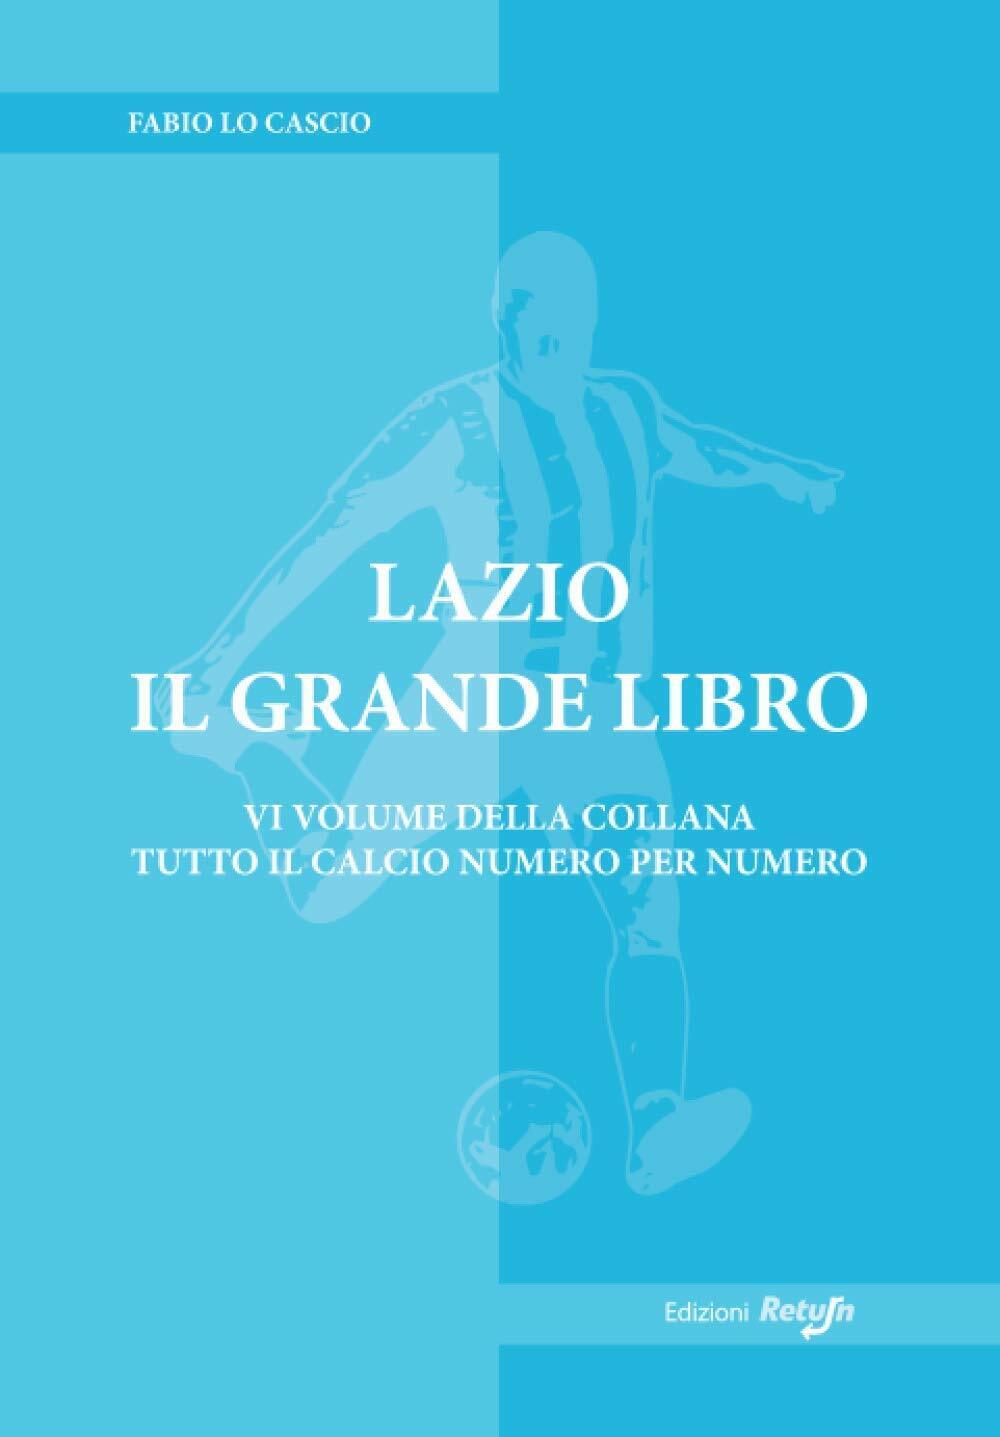 Lazio il Grande Libro - Fabio Lo Cascio - Return, 2019 libro usato